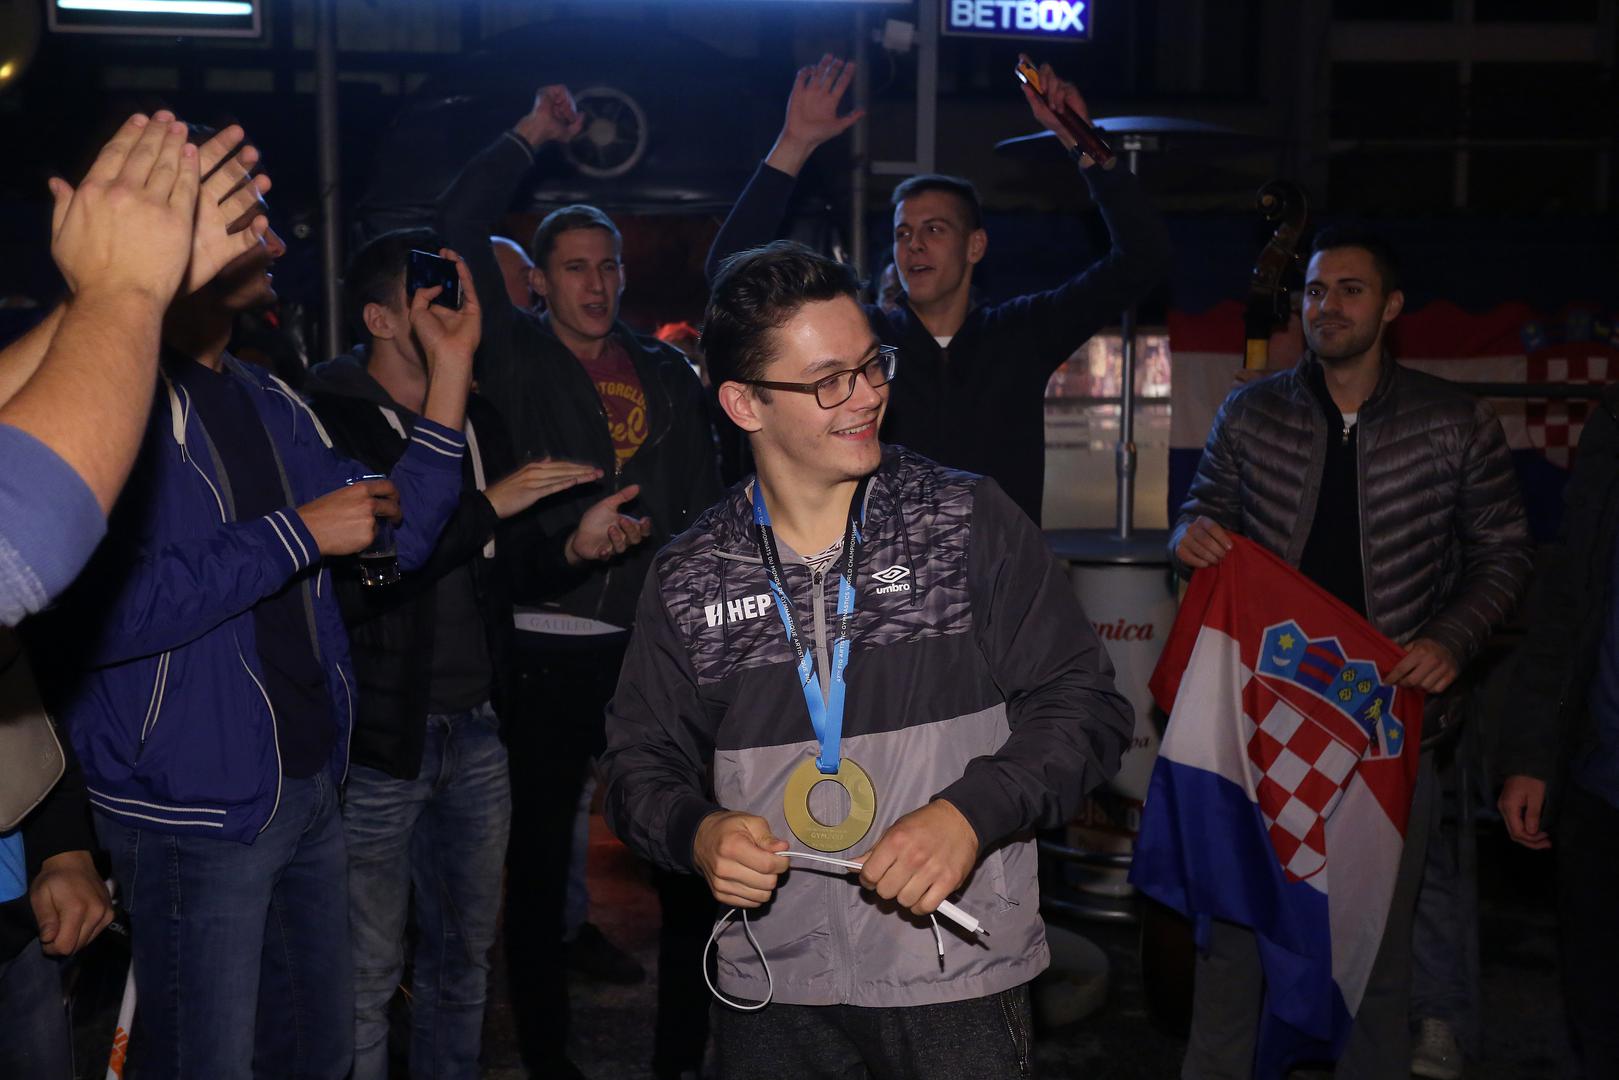 Prijatelji svjetskog prvaka na preci, Tina Srbića, priredili su vatreni doček u CB Happyness u Dubravi